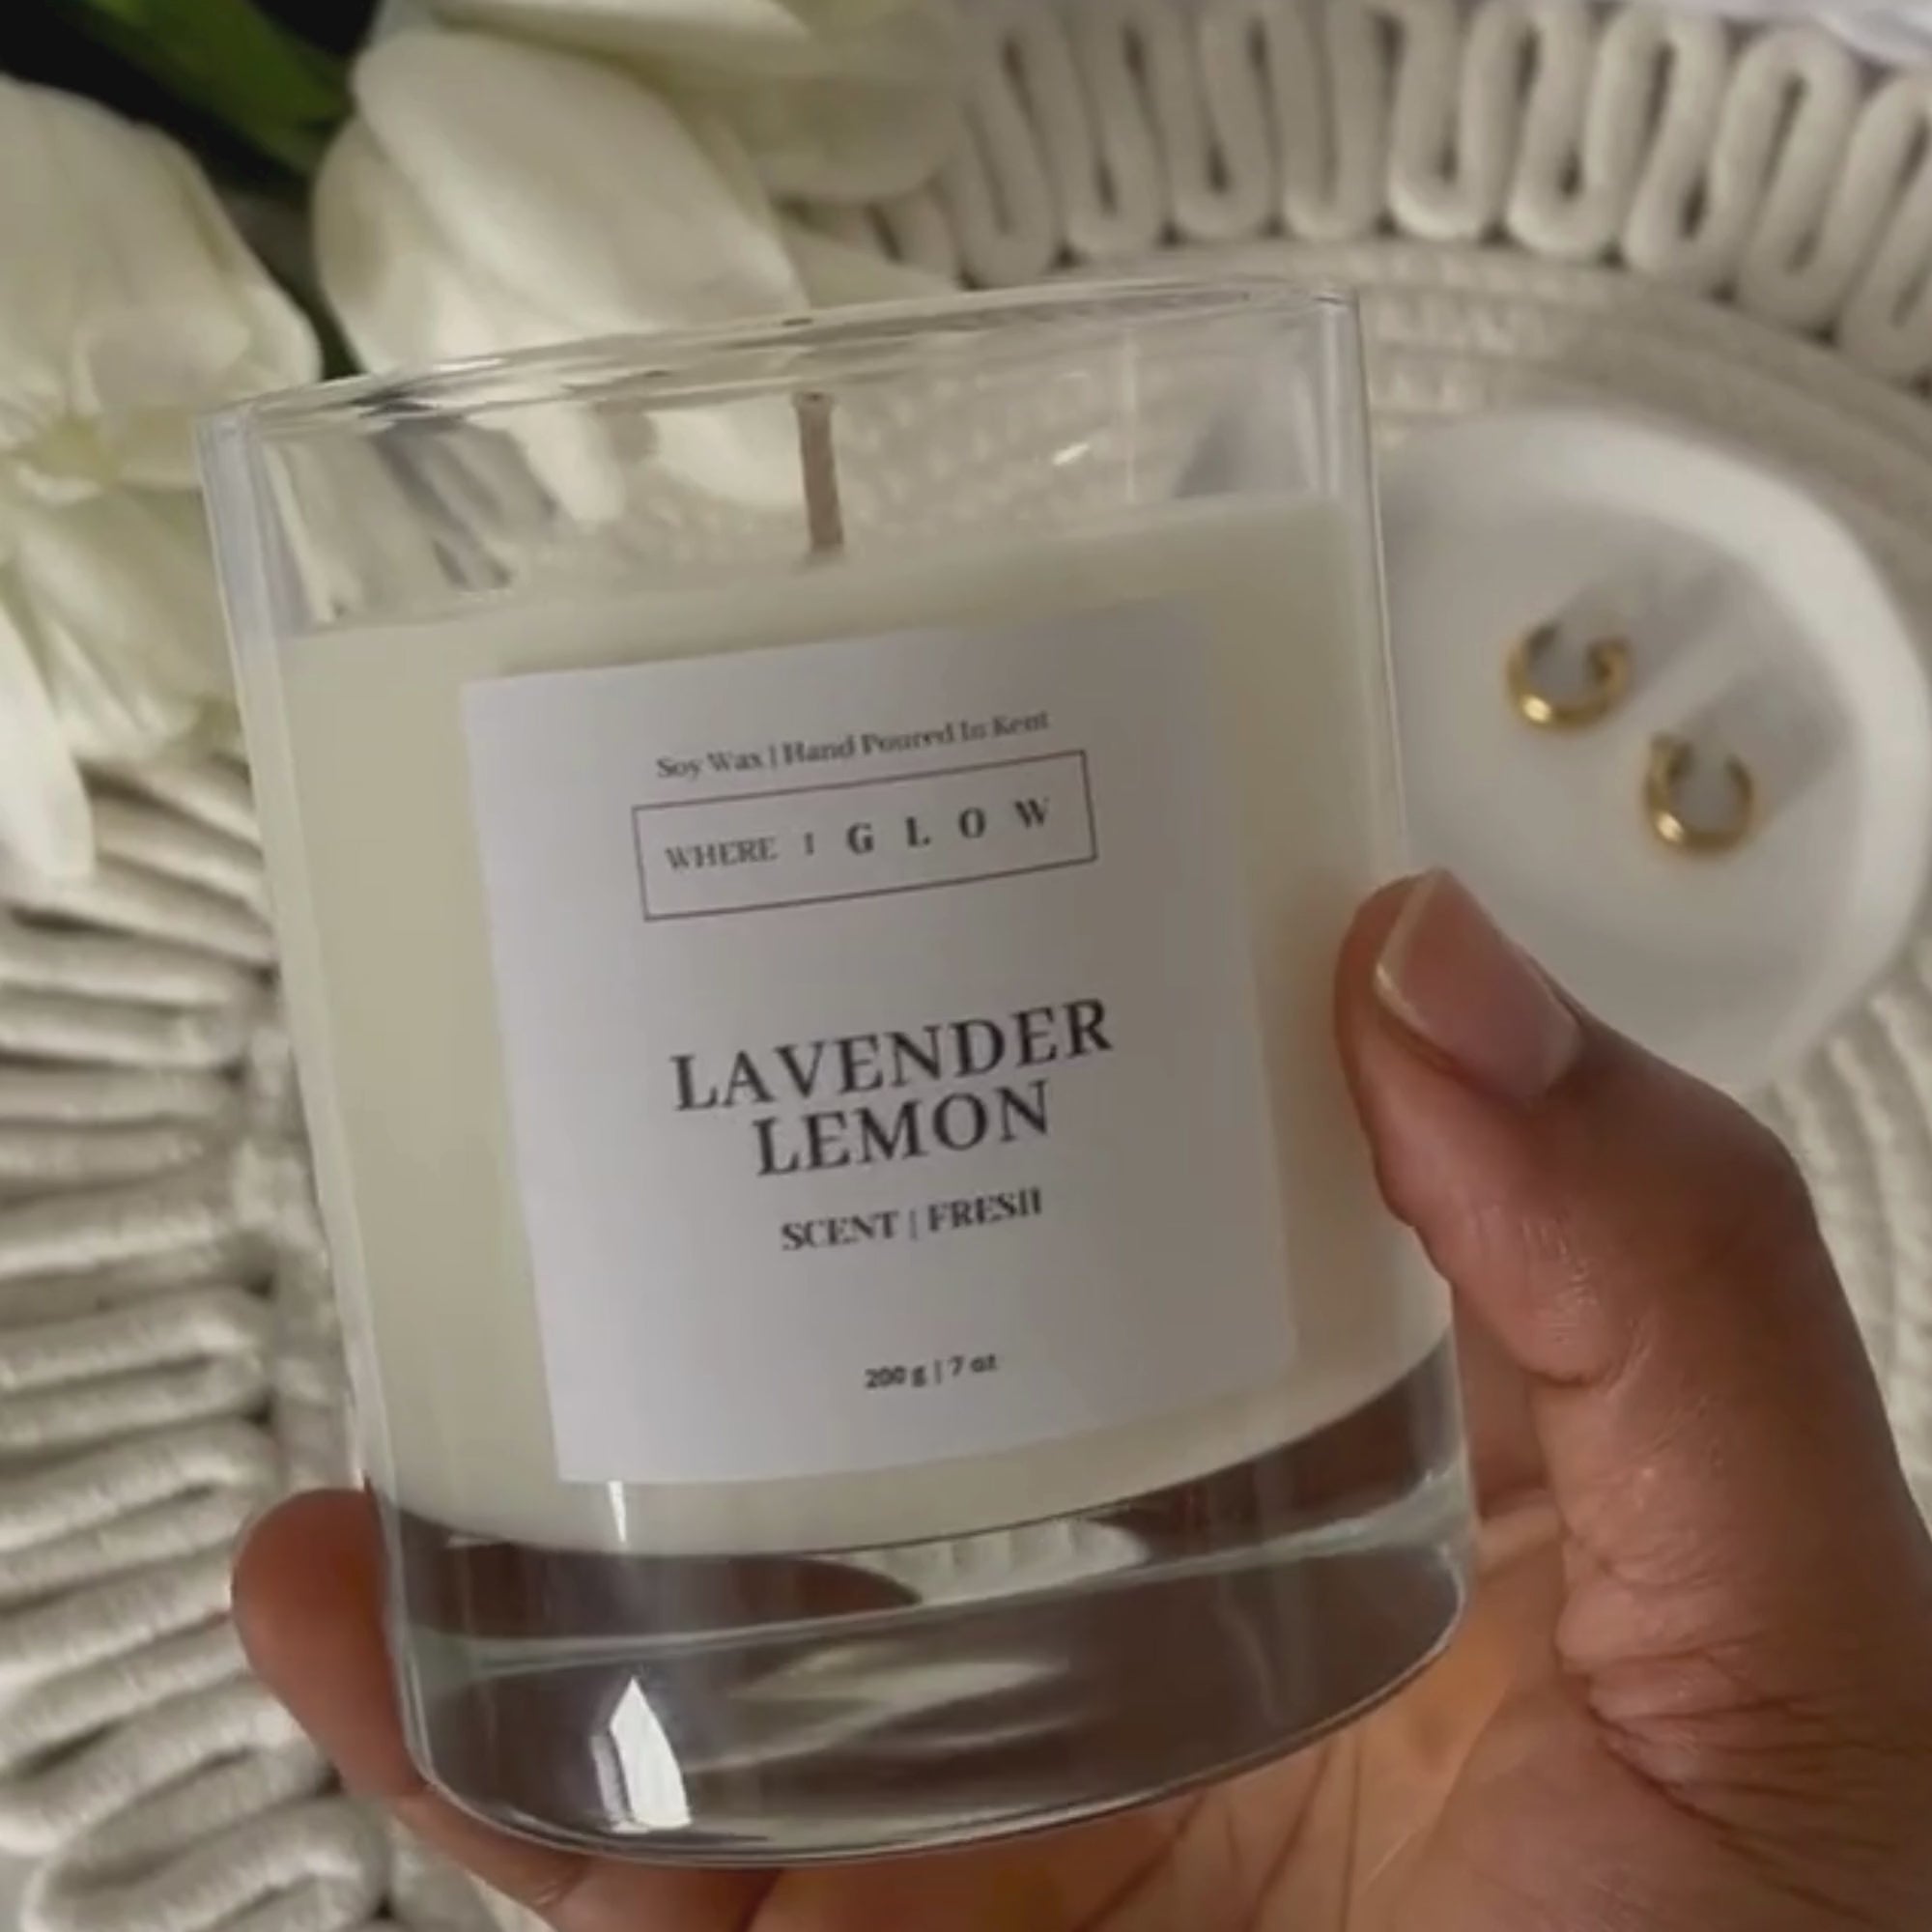 Lavender Lemon Aromatherapy Soy Candle 7 oz by Where I Glow